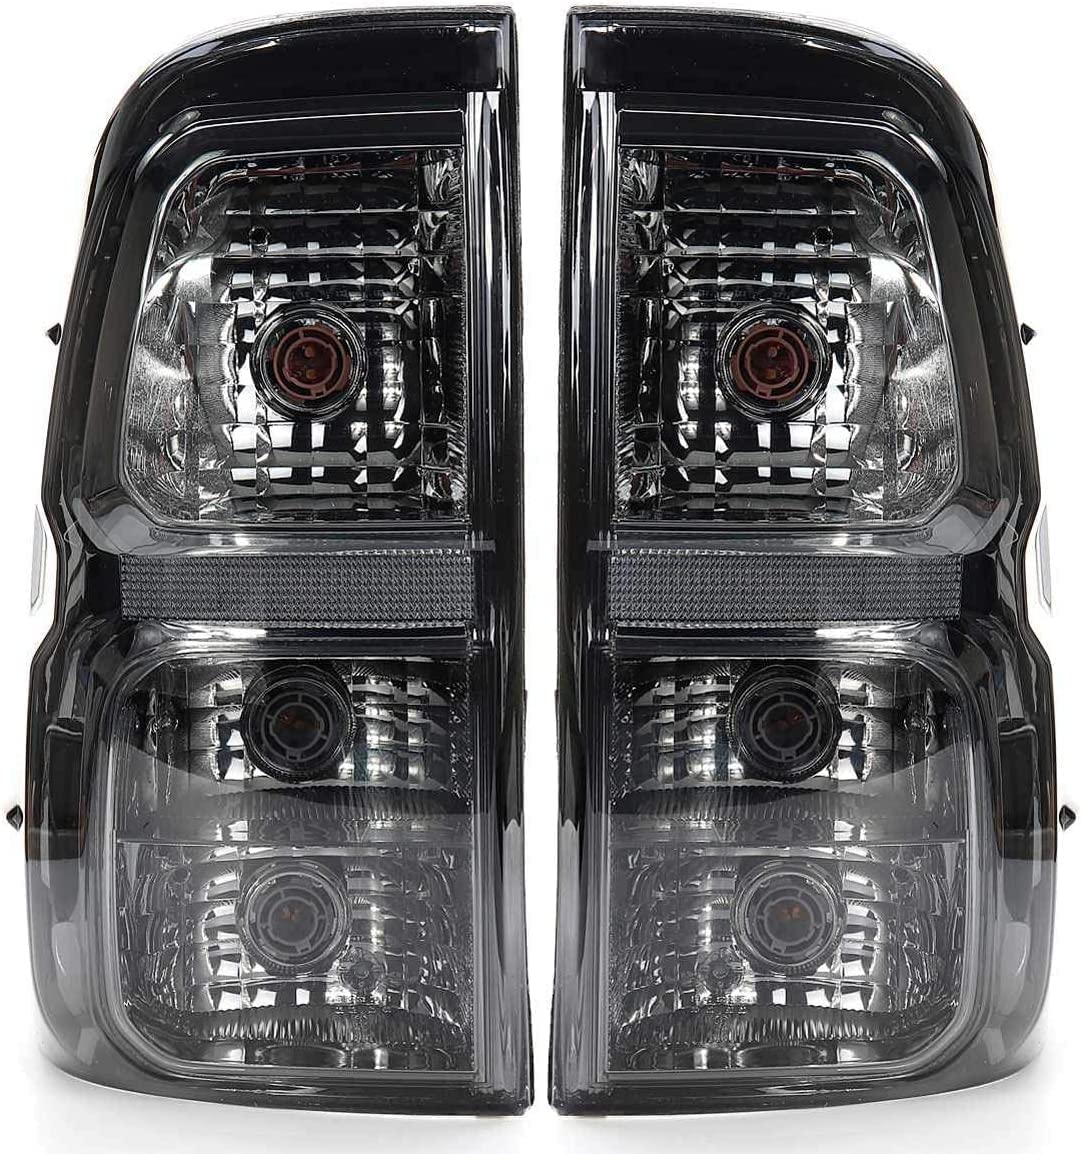 FIEZE Auto Rücklicht Komplettsets Für Toyota Hilux Revo 2015-2018, Nebelscheinwerfer Reflektor Lampe Heckbremse Lampe Wasserdicht,A Pair von FIEZE